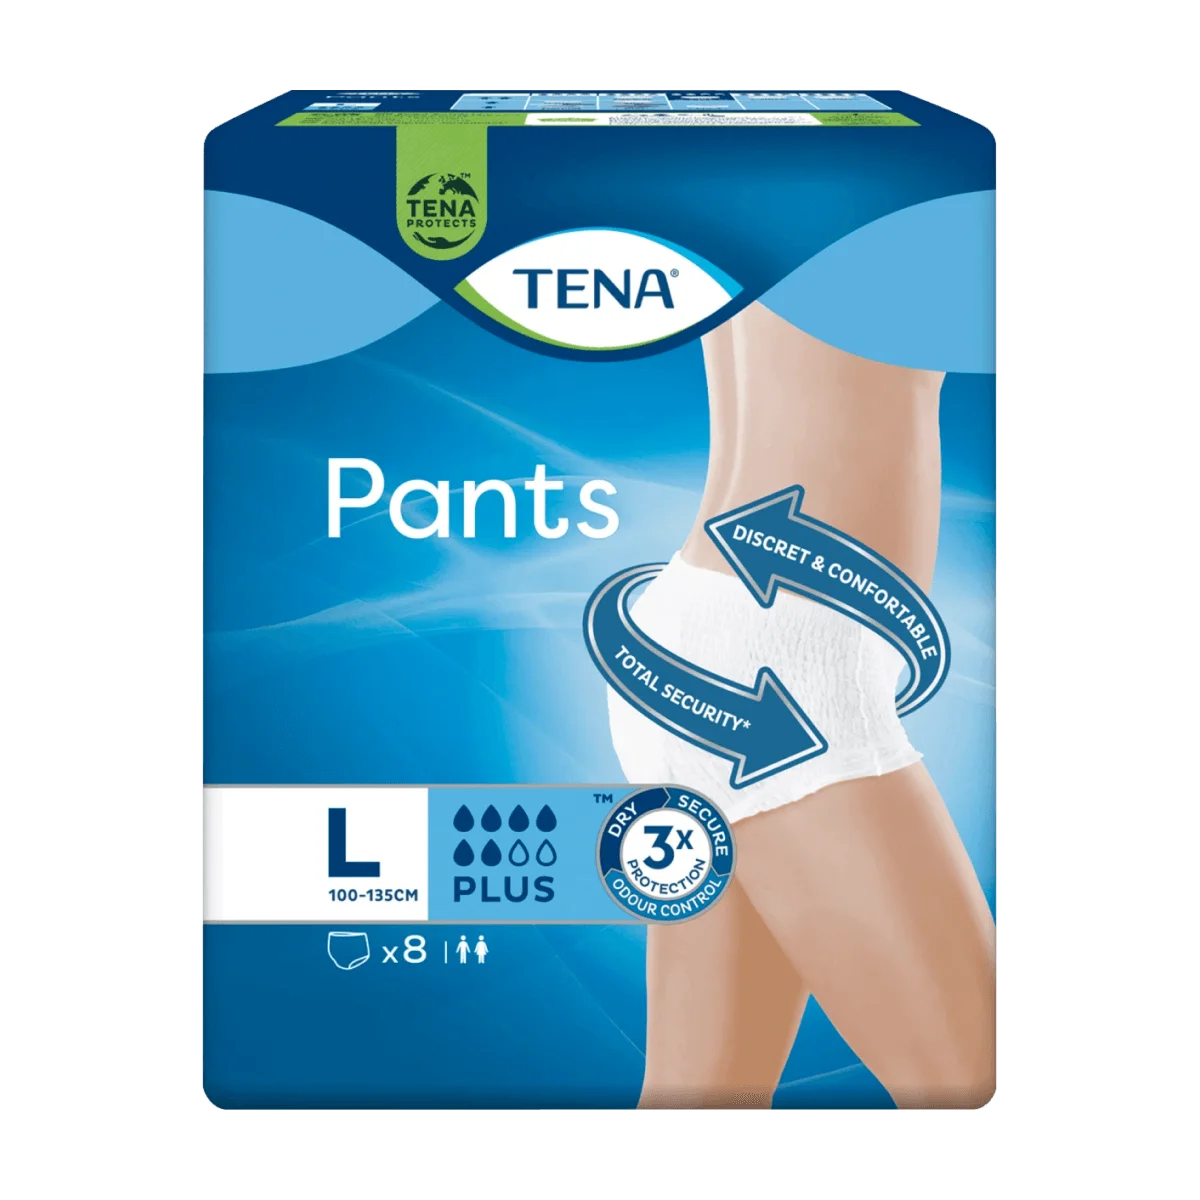 TENA Pants Plus Inkontinenz Gr. L, 8 Stk